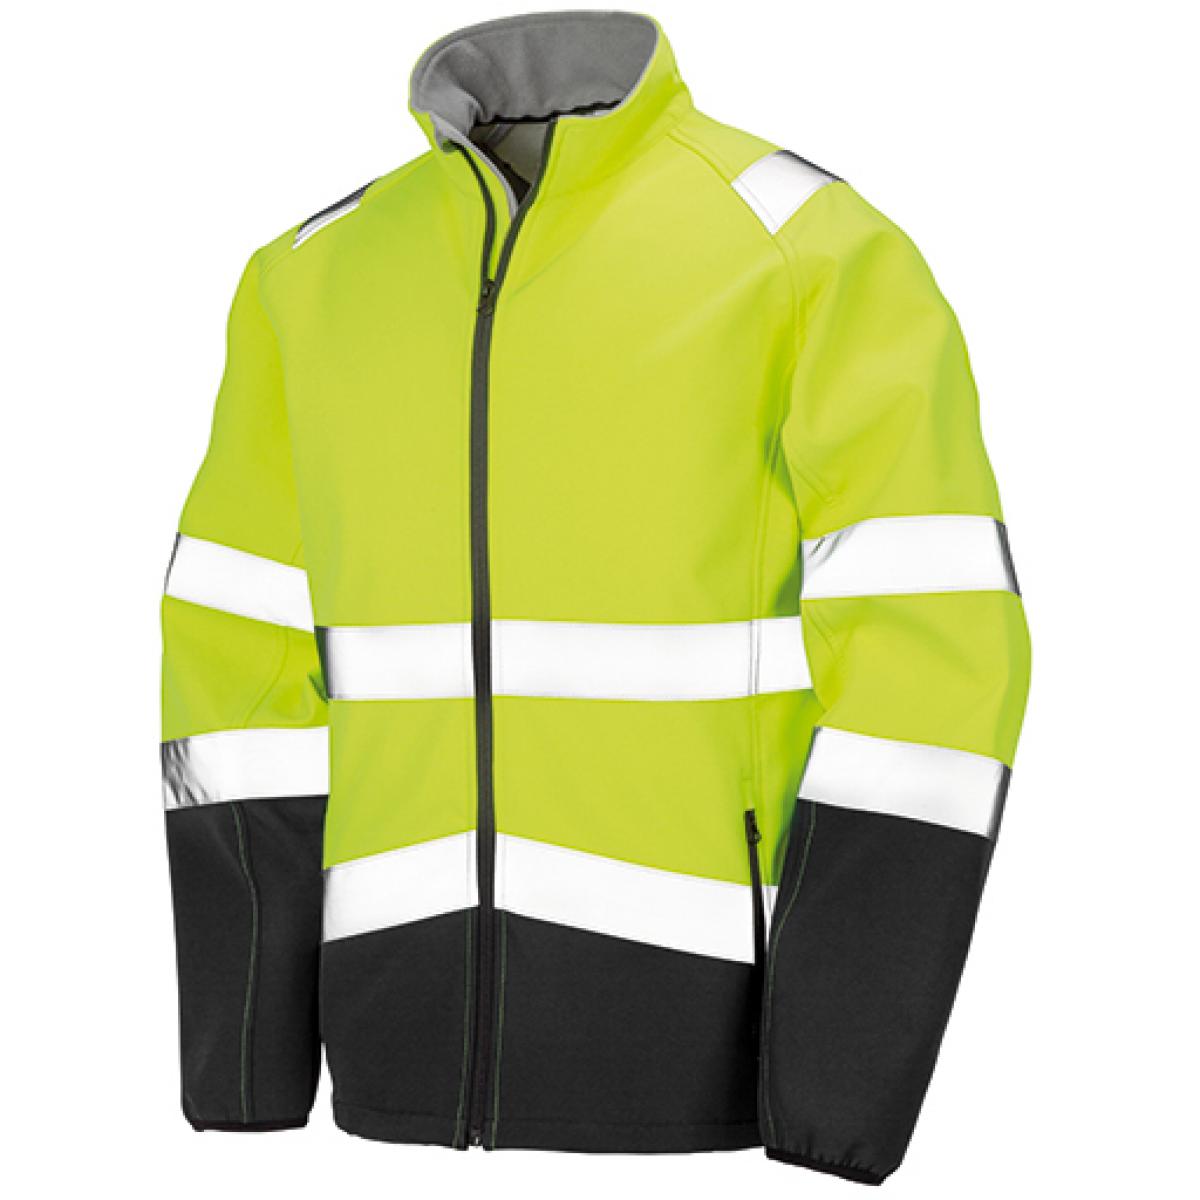 Hersteller: Result Herstellernummer: R450X Artikelbezeichnung: Herren Safety Softshell Jacke Farbe: Fluorescent Yellow/Black